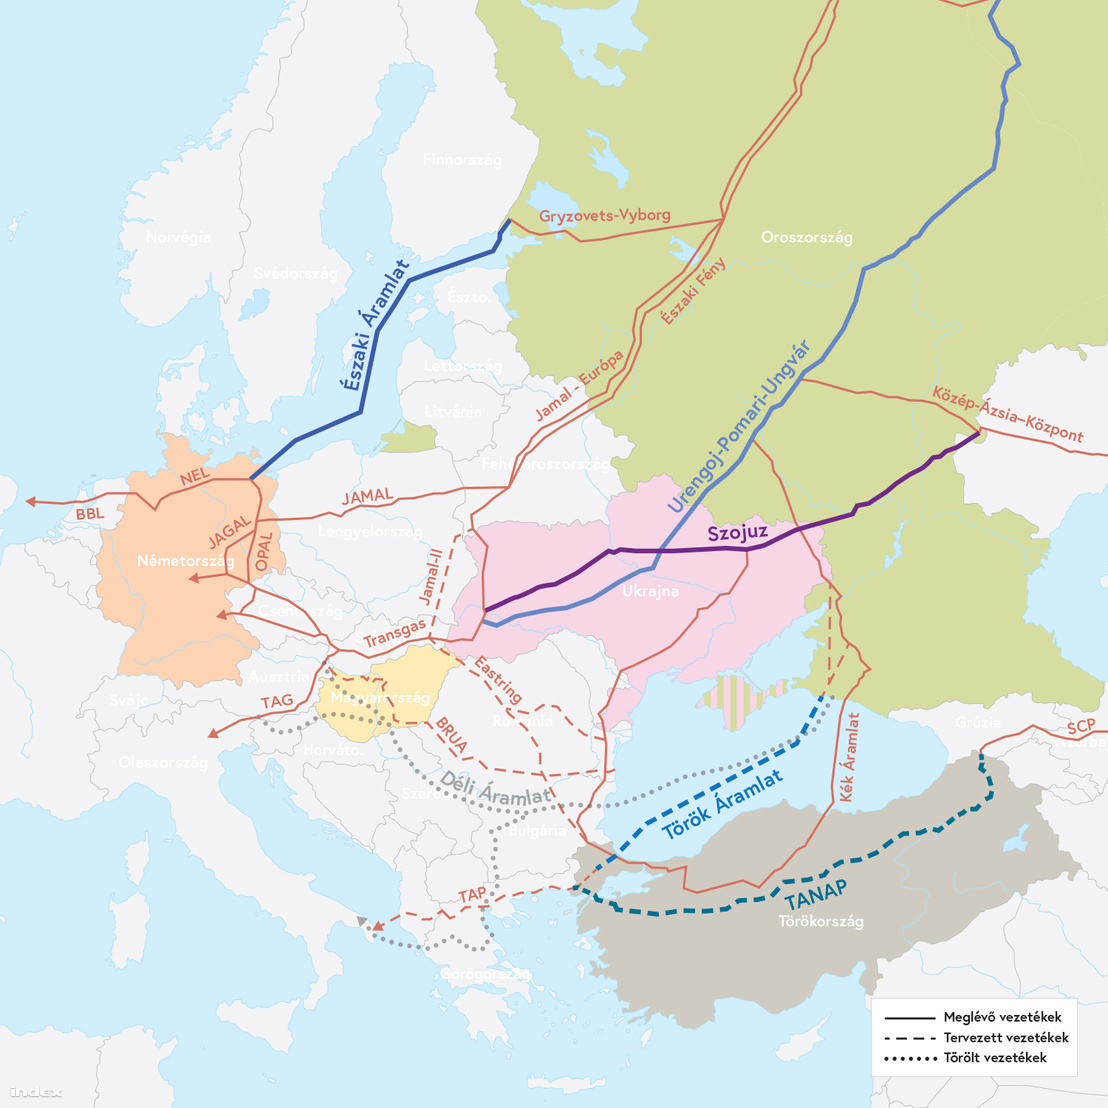 A fontosabb kelet-nyugat irányú földgáz-vezetékek Európában, illetve az utóbbi években különböző stádiumokig eljutott új vezetéktervek. A térképen szereplő vezetékek az építés alatt álló TANAP, illetve az ahhoz kapcsolódó TAP kivételével mind az oroszok kezében vannak.